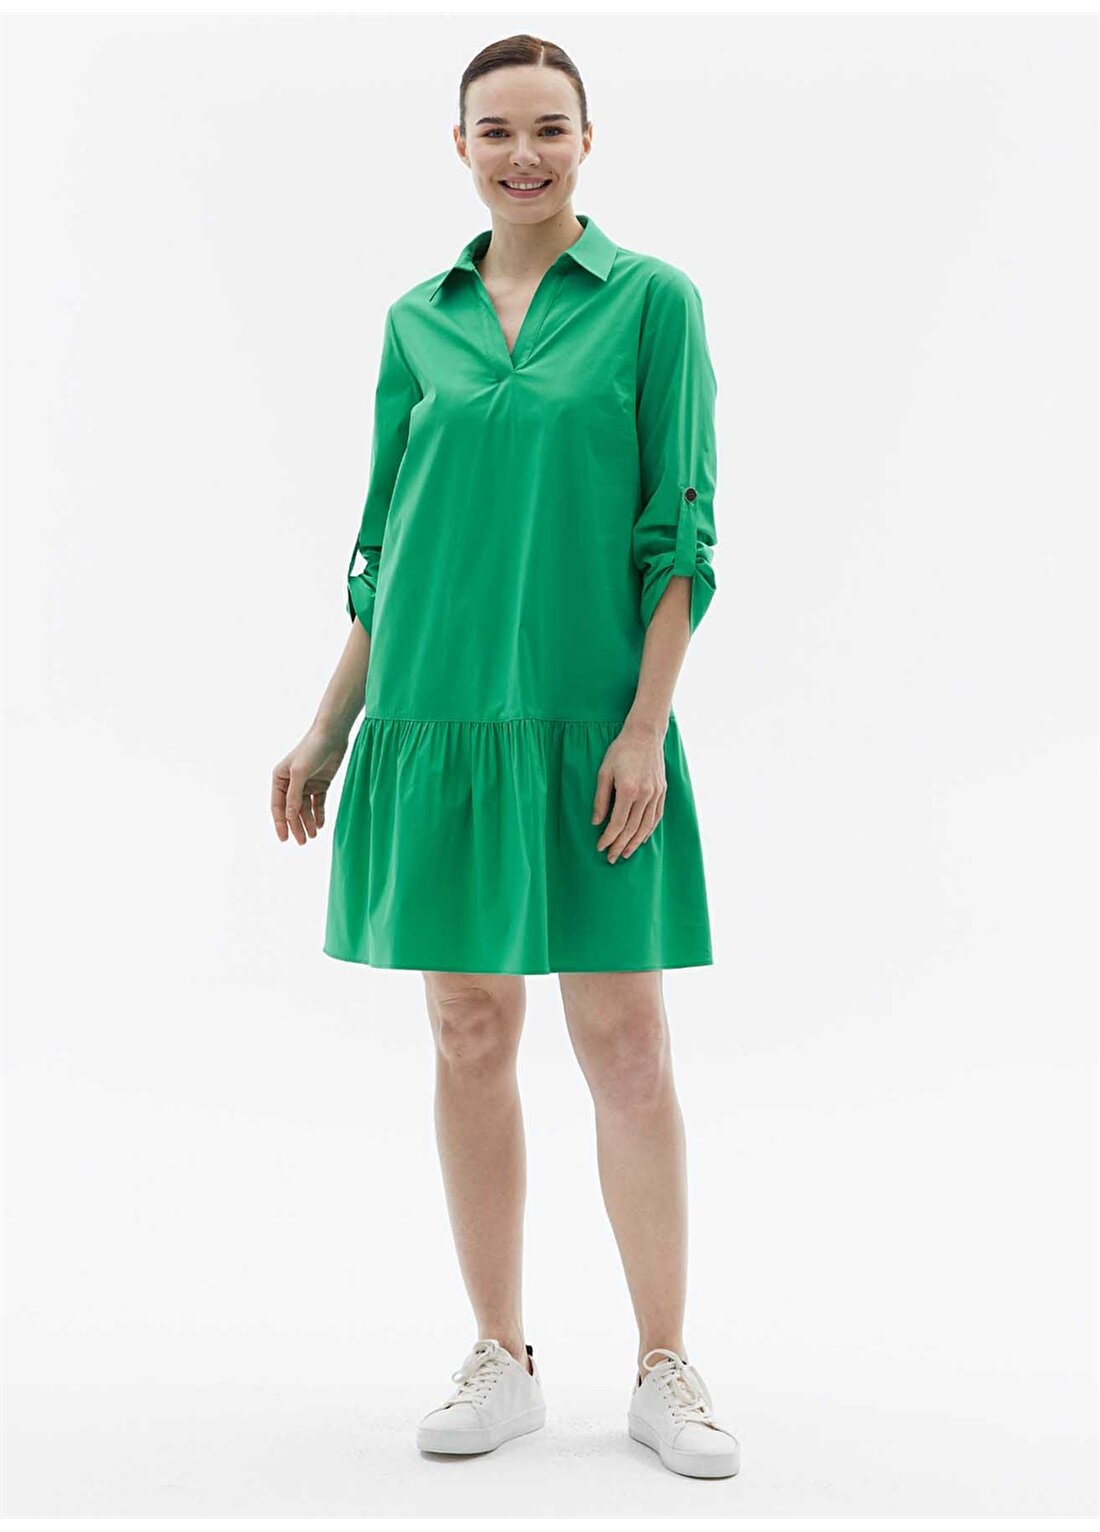 Selen Gömlek Yaka Düz Yeşil Standart Kadın Elbise 24YSL7444